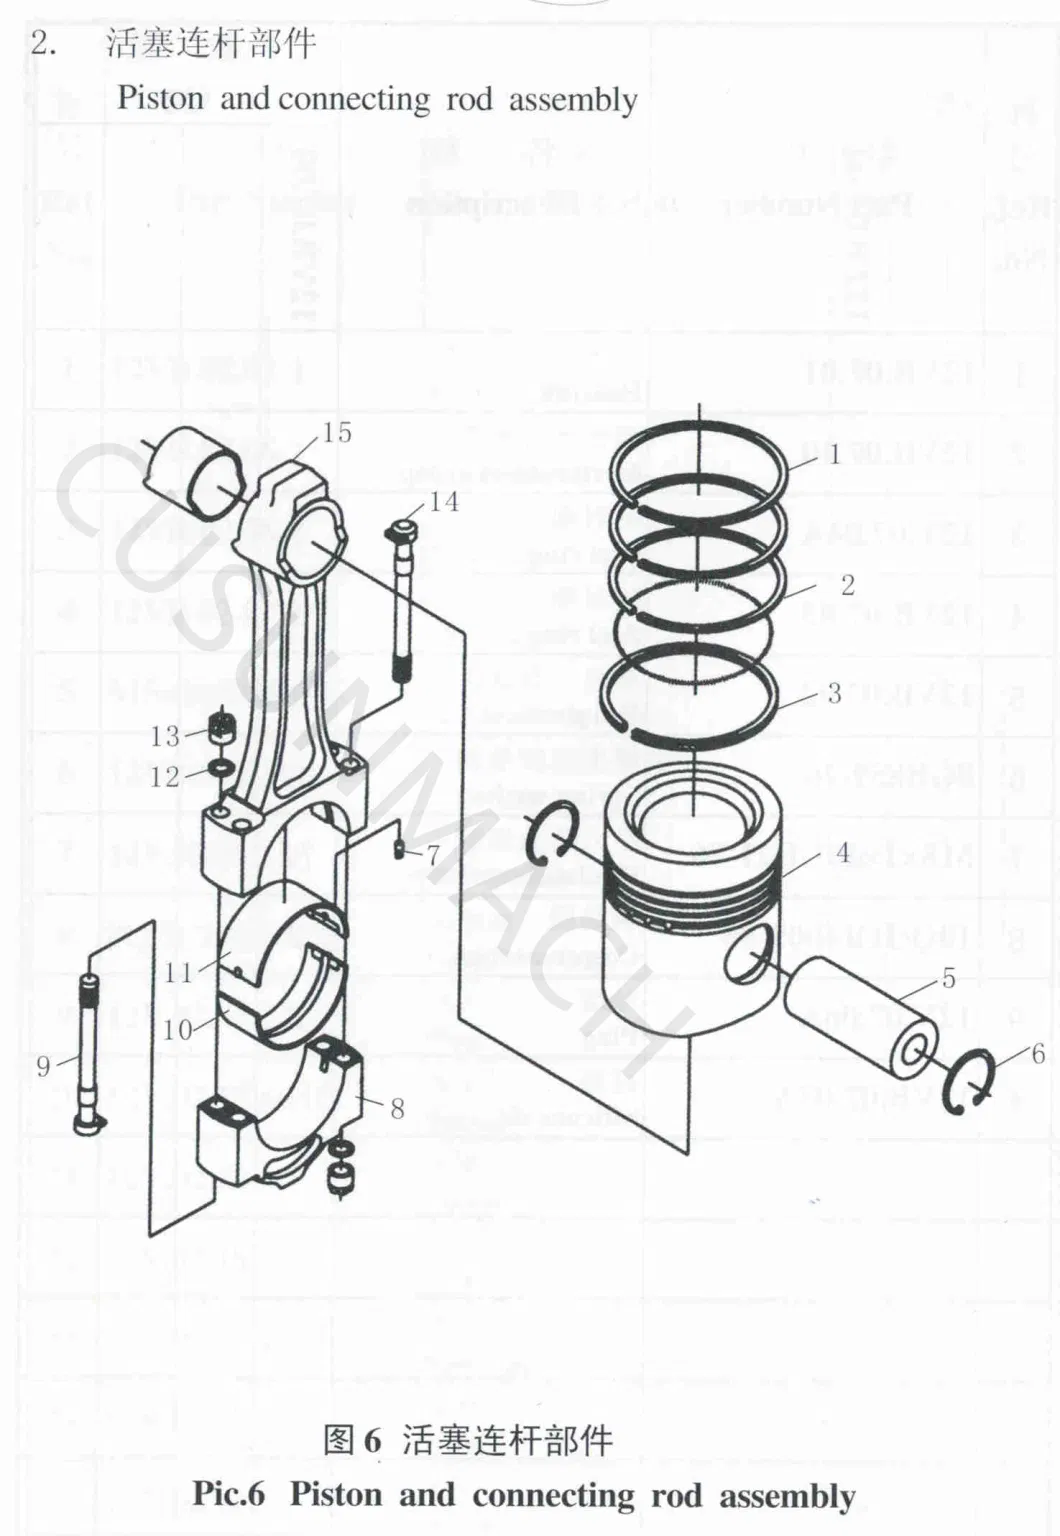 Jcpc Biogas Engine Cylinder Sleeve 601.01.02 for H16V190